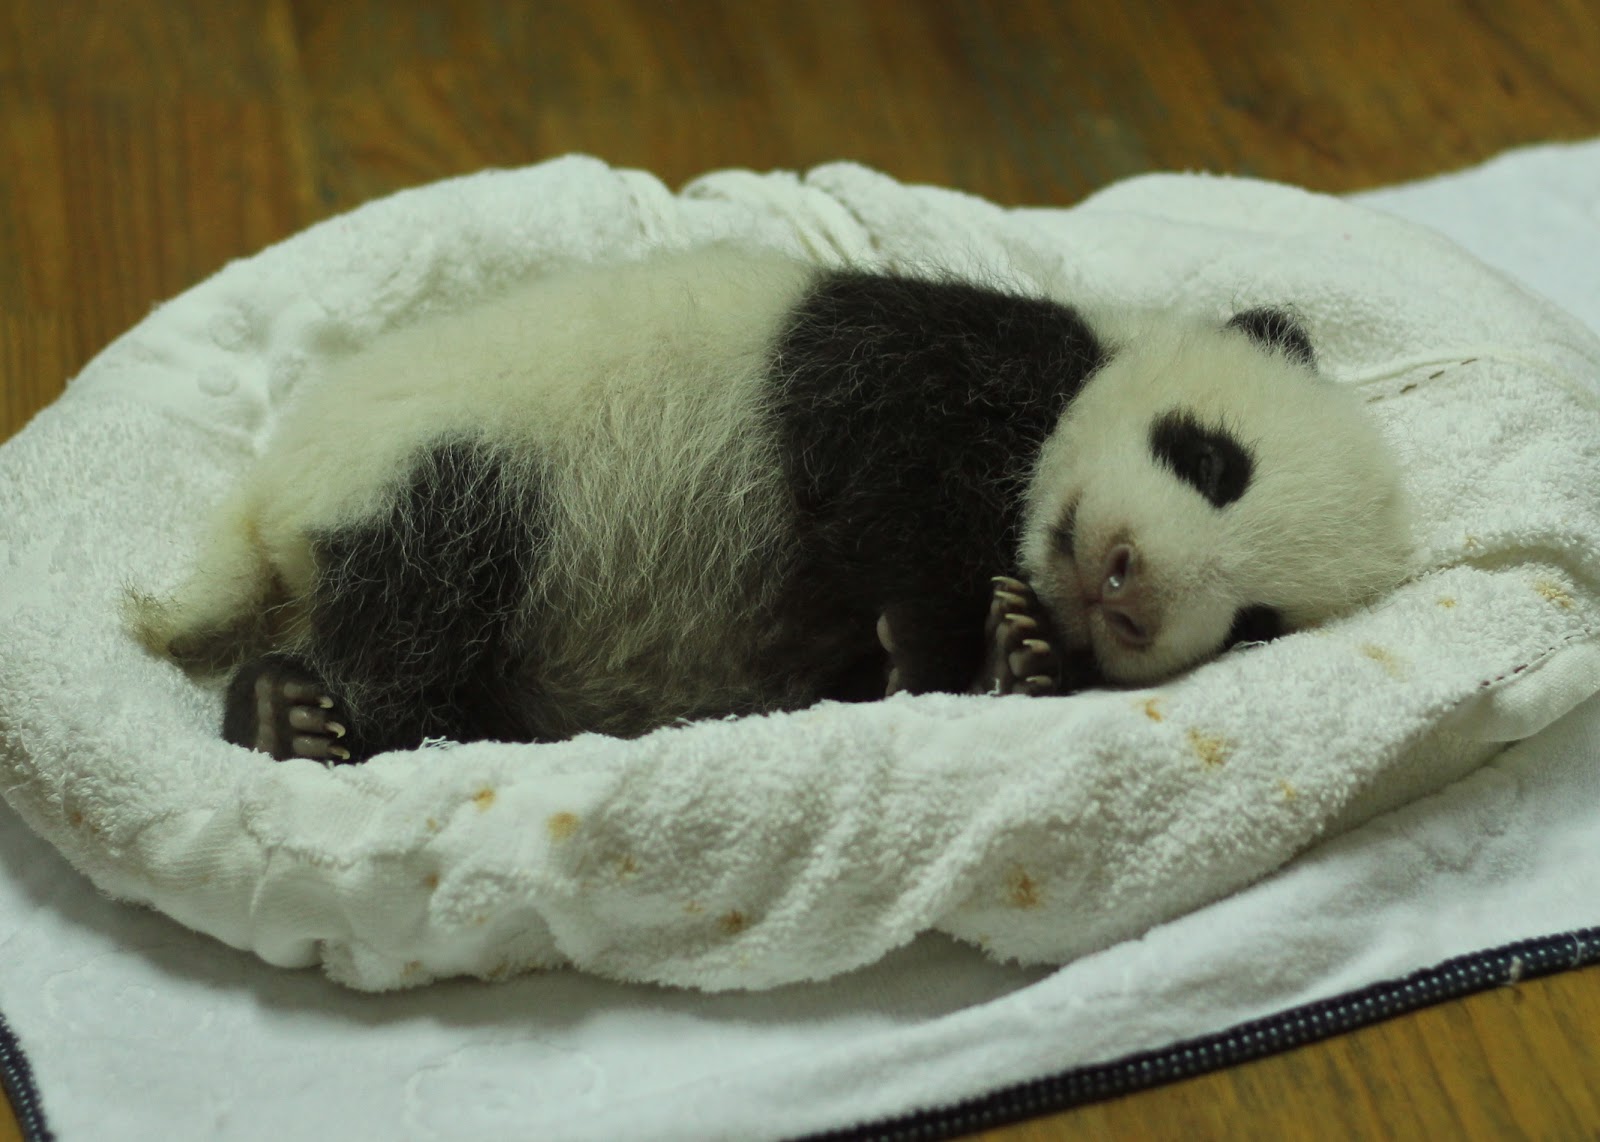 バスケットの中で寝ている生後一ヵ月の赤ちゃんパンダ